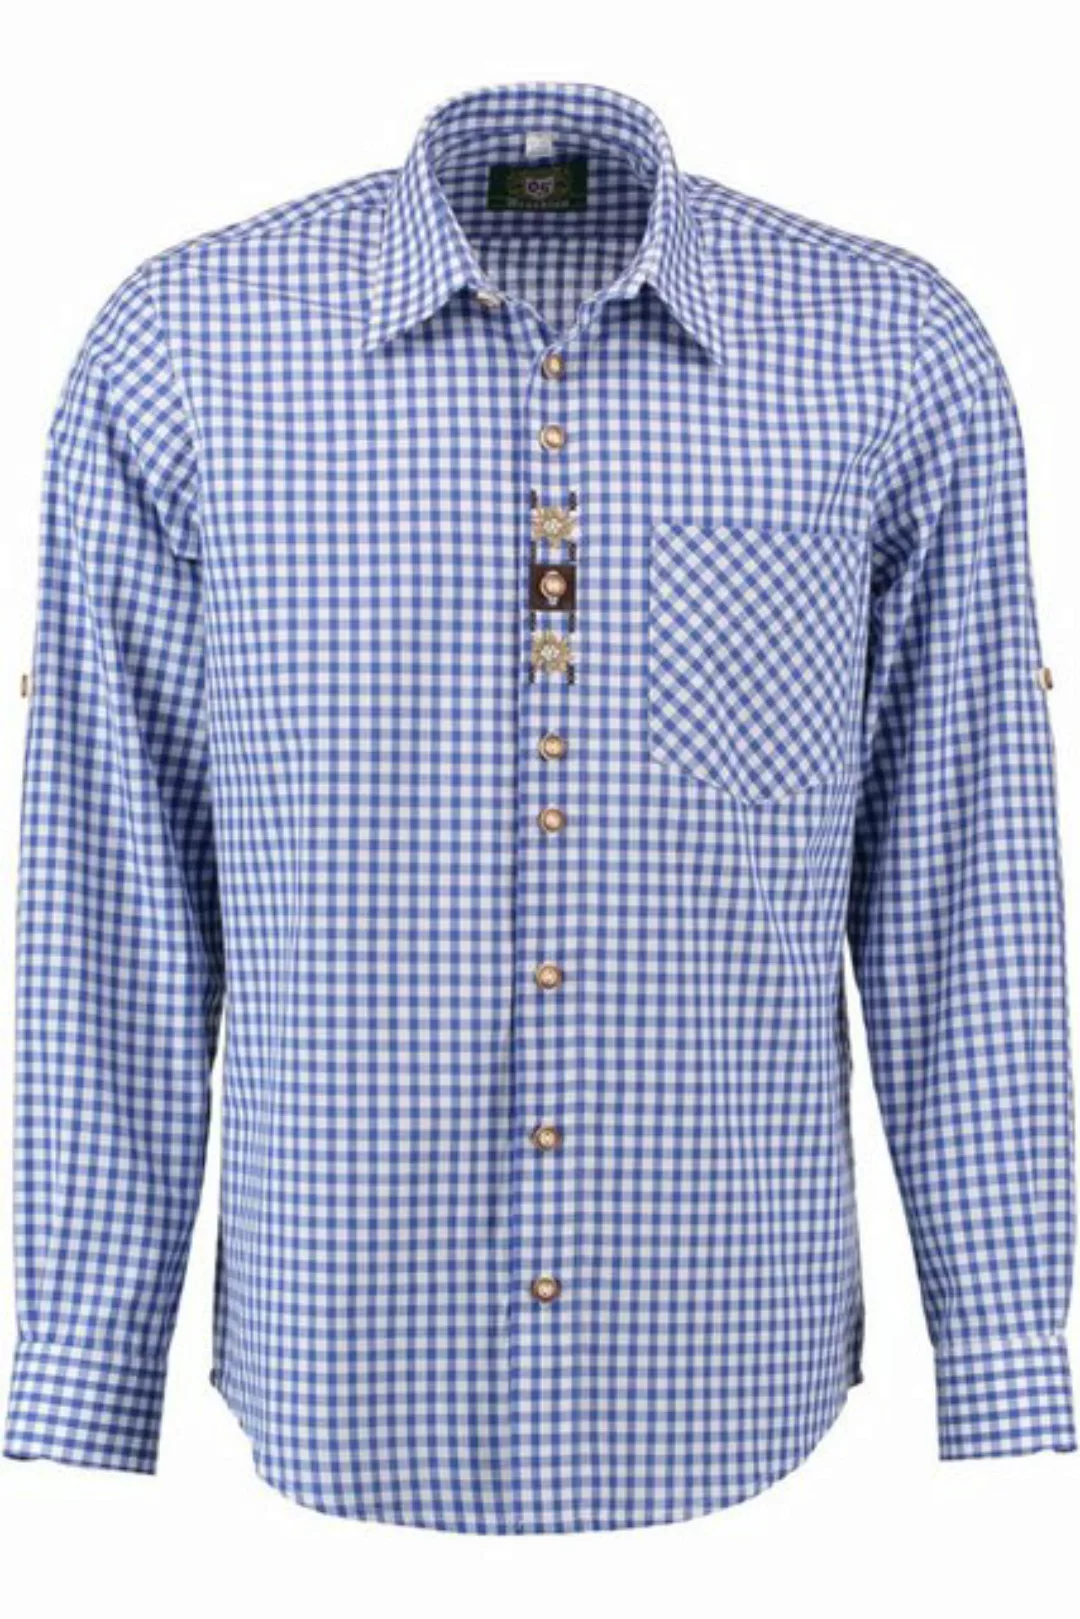 orbis Trachtenhemd Trachtenhemd - H1538 - blau günstig online kaufen